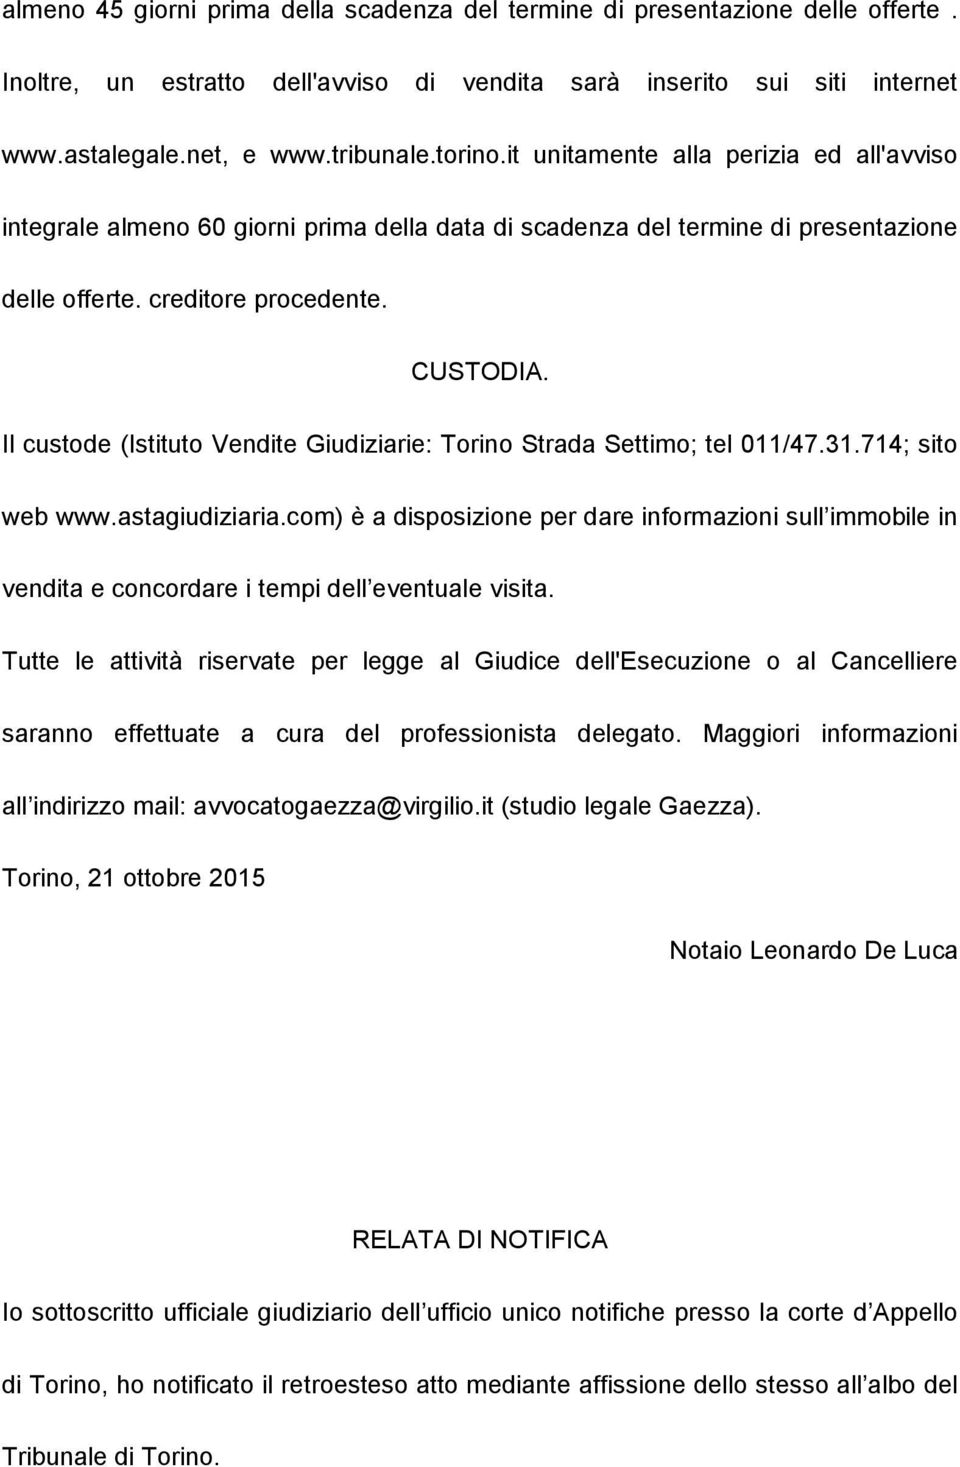 Il custode (Istituto Vendite Giudiziarie: Torino Strada Settimo; tel 011/47.31.714; sito web www.astagiudiziaria.